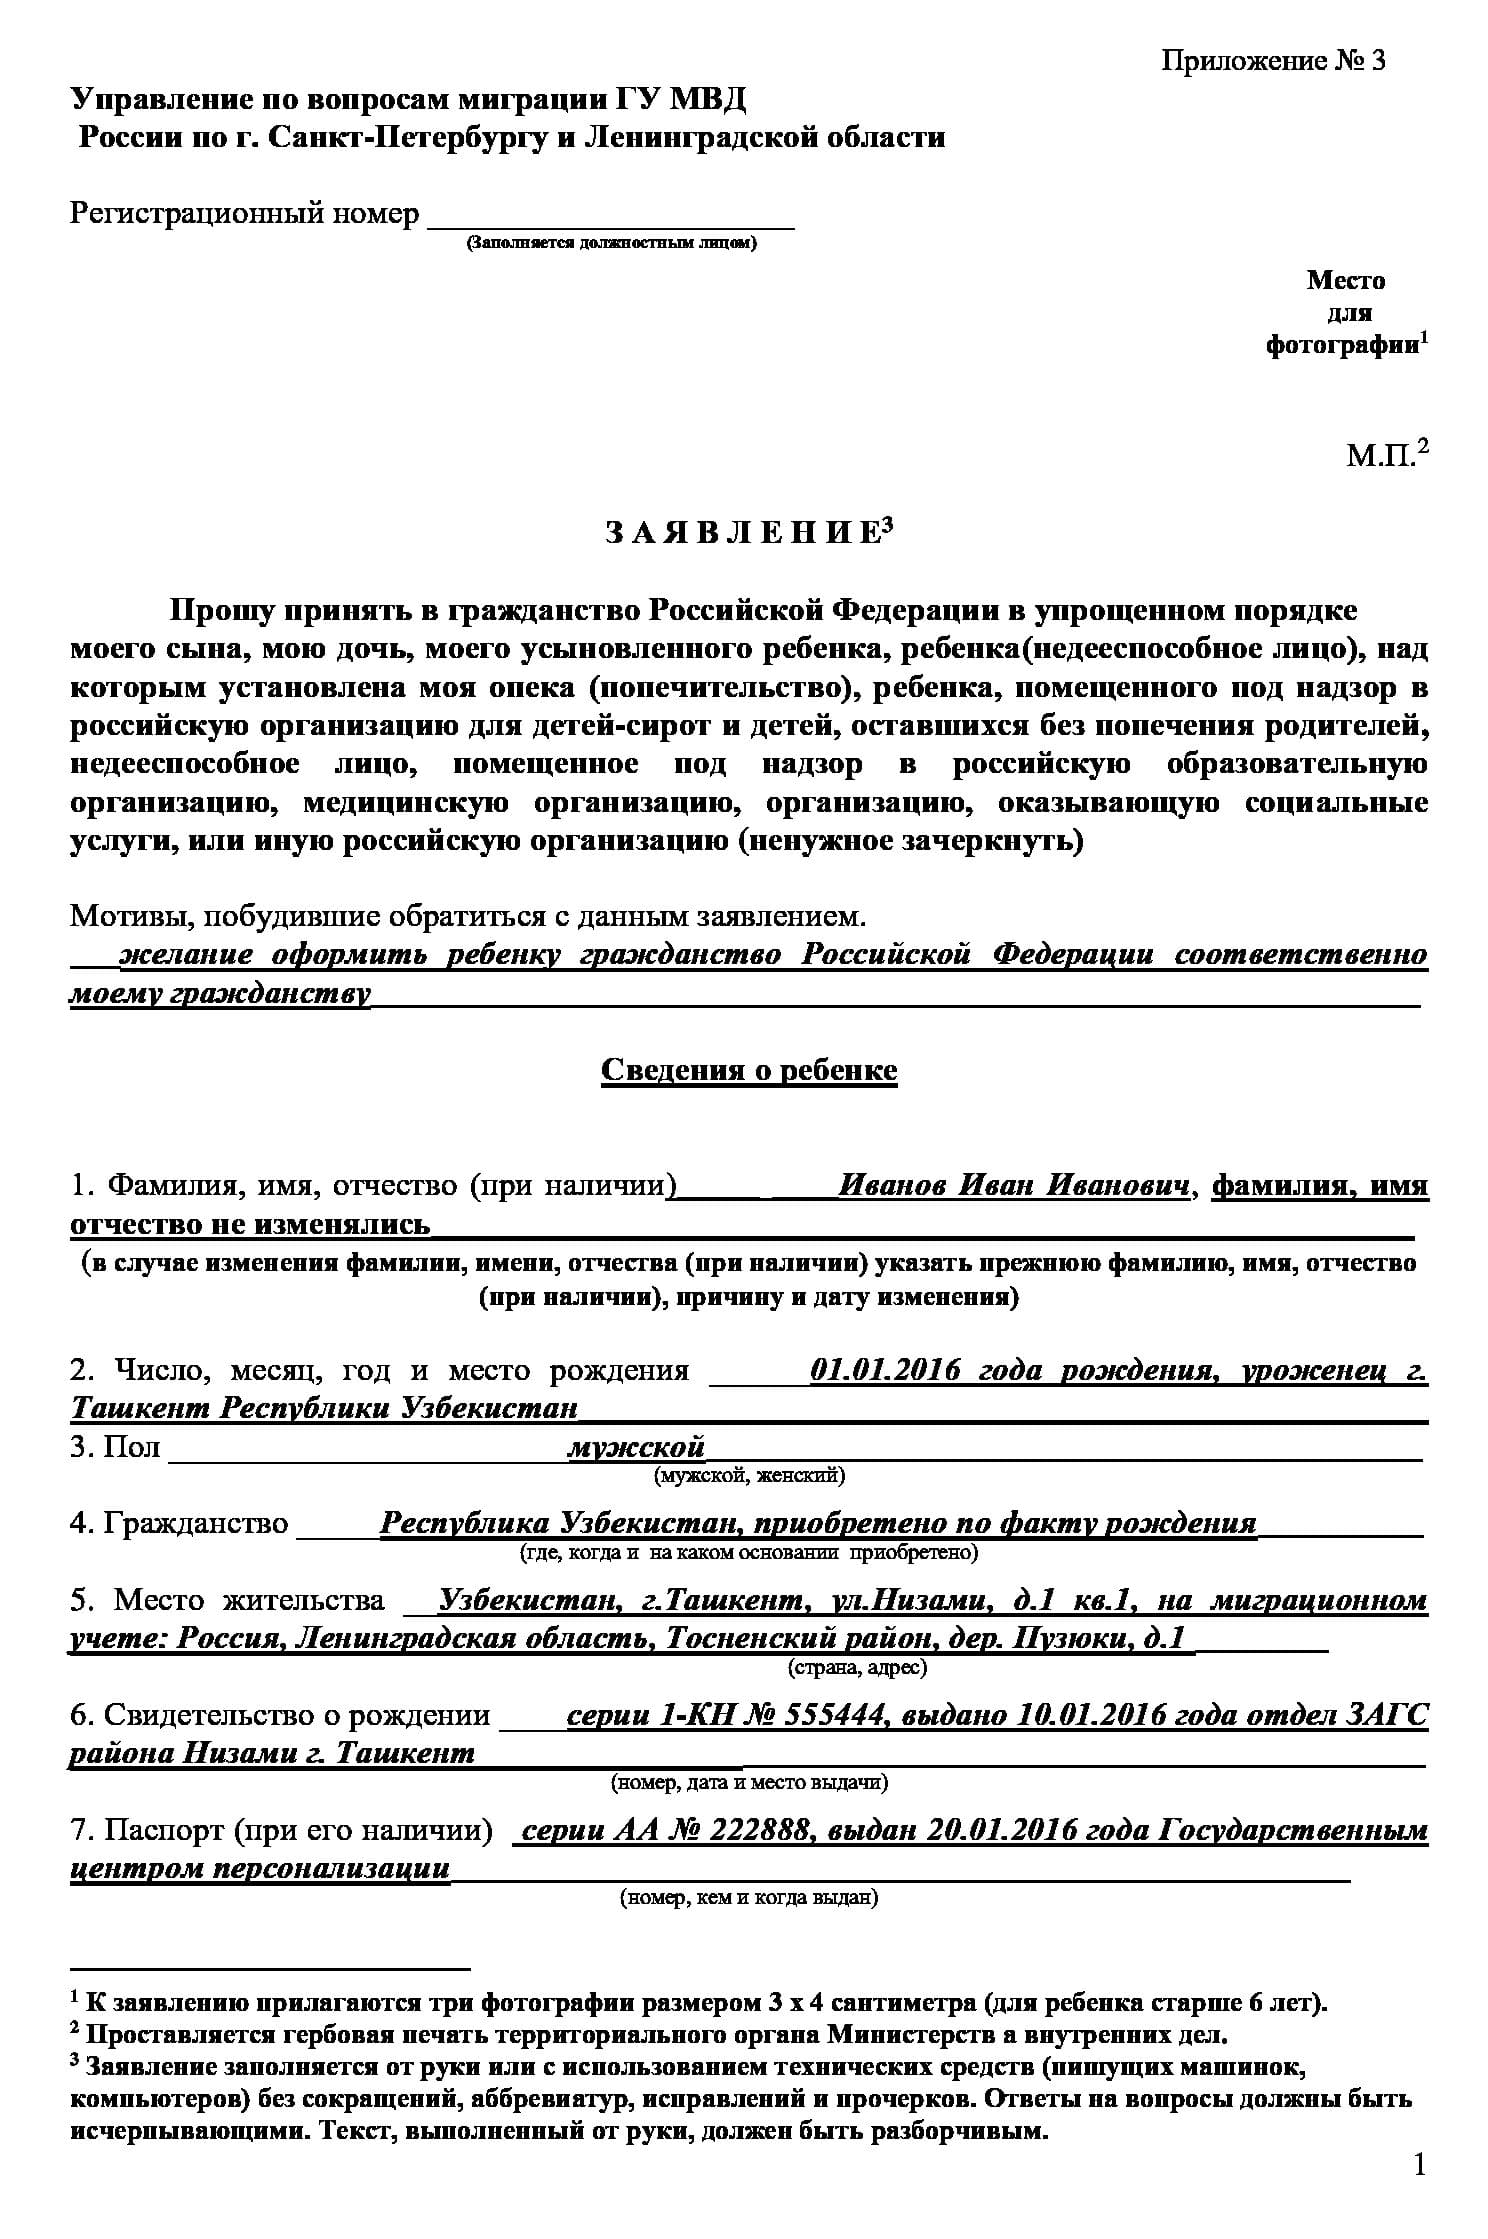 Программа по переселению соотечественников ярославская область 2020